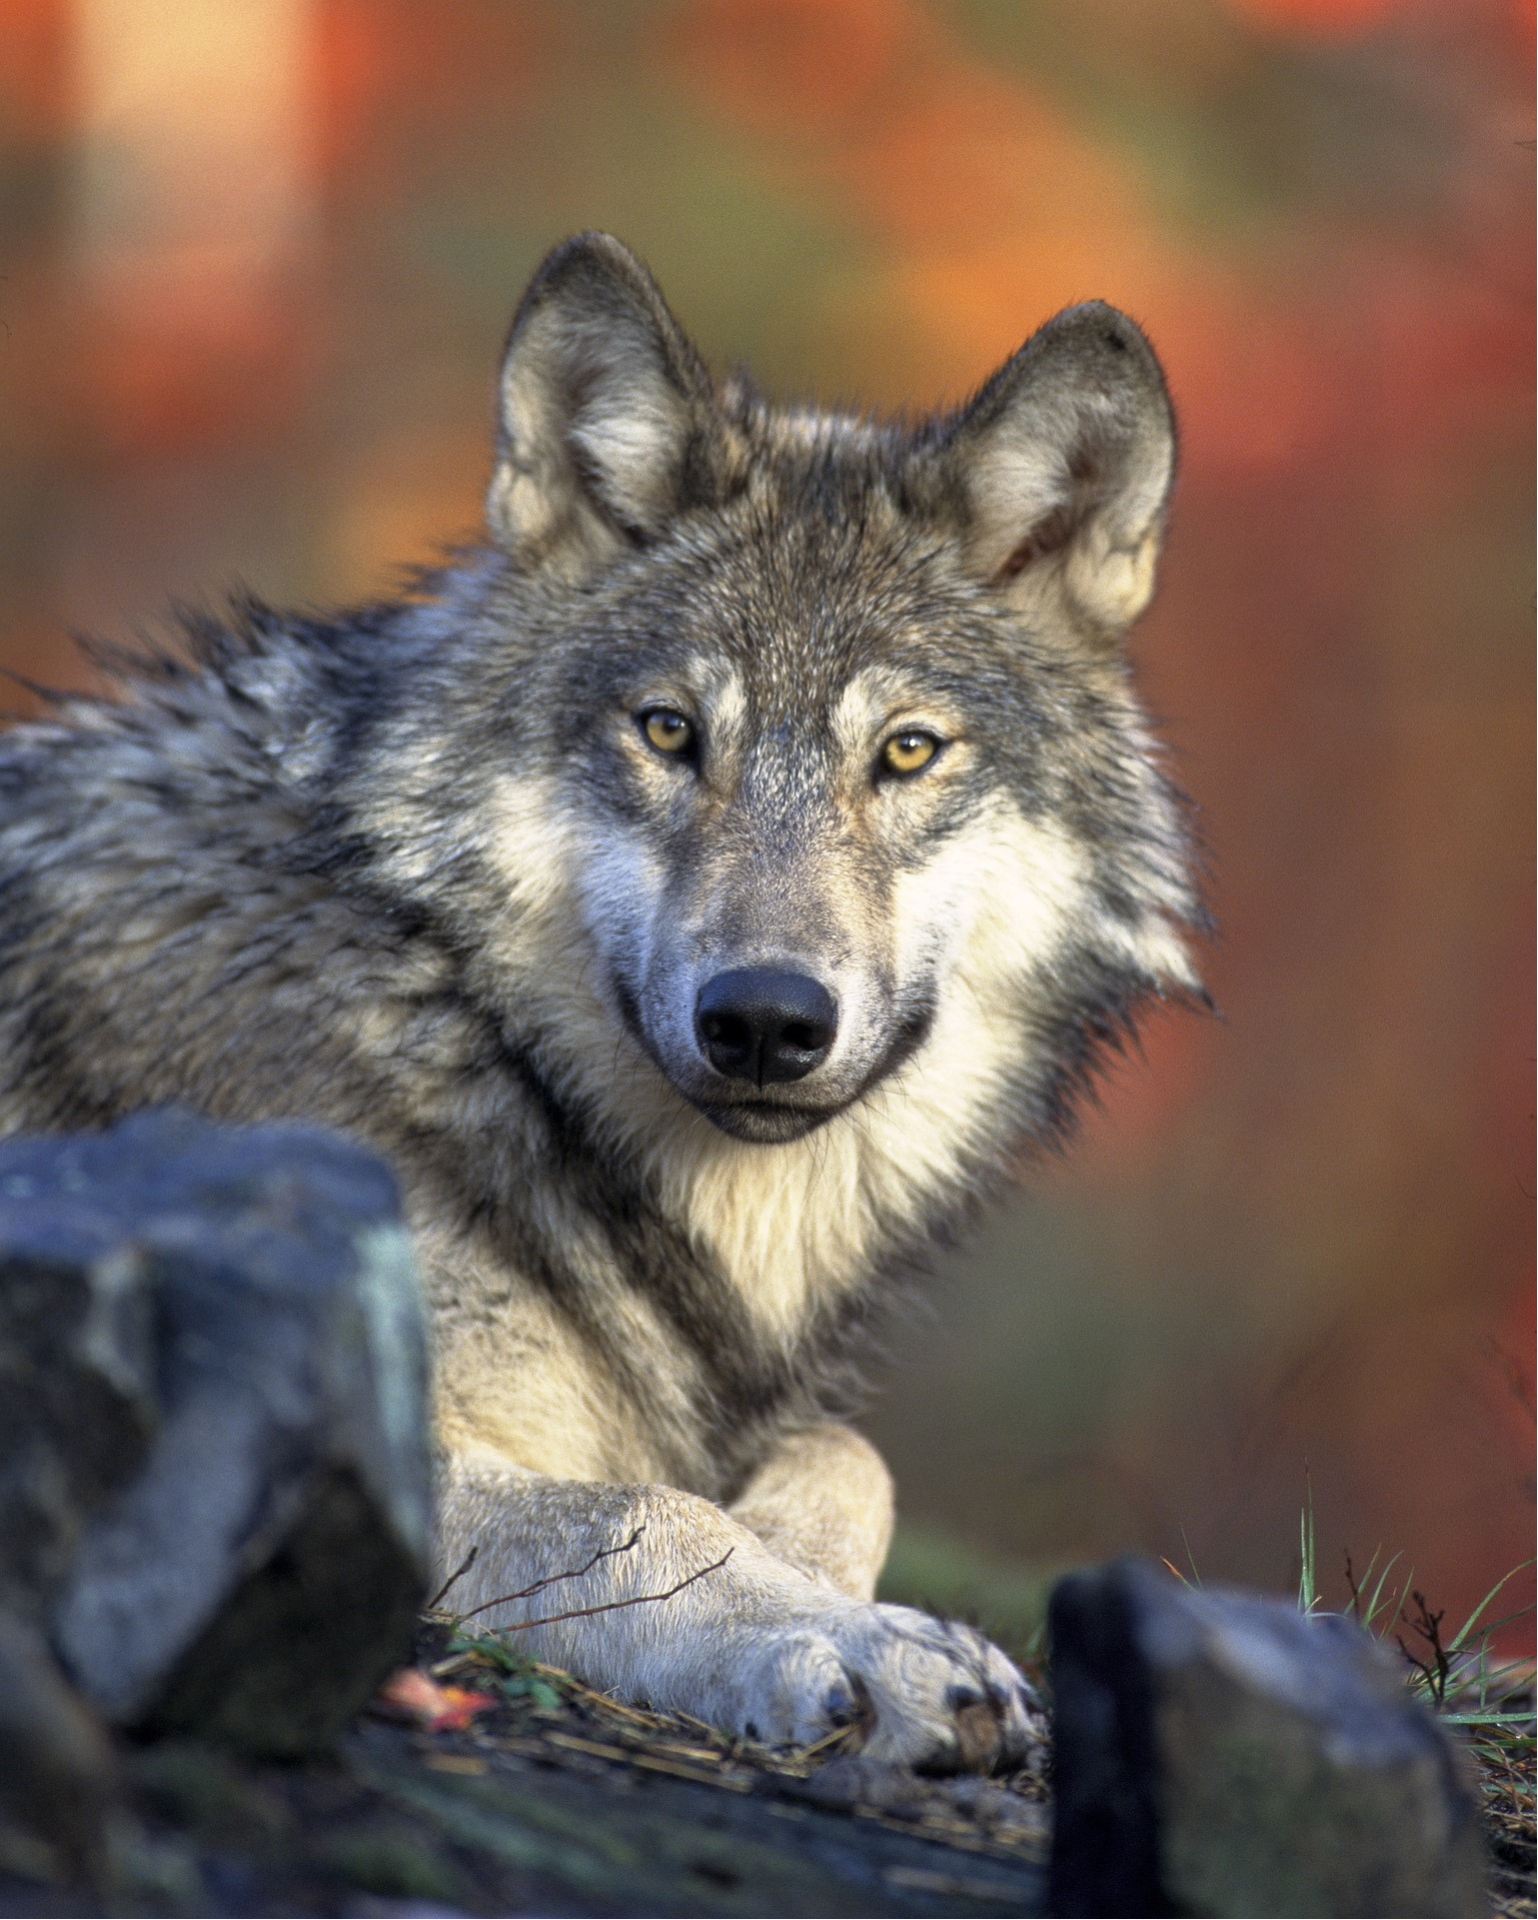 Komunikat Regionalnego Dyrektora Ochrony Środowiska w Warszawie w sprawie wilków